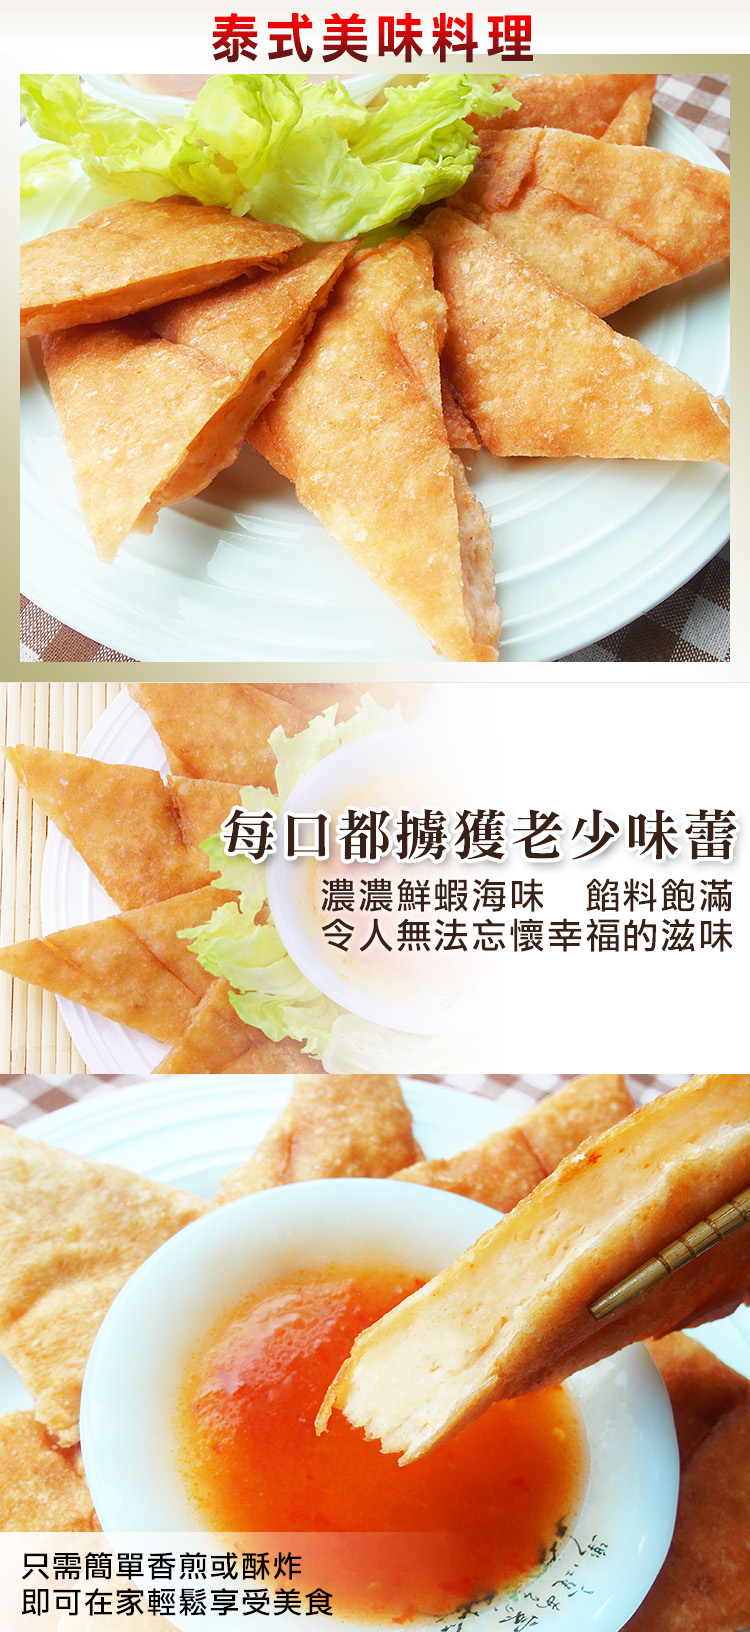 (團購組) 食吧嚴選 泰式黃金月亮蝦餅 10片組( 200g±10%/片 )-附泰式酸甜醬